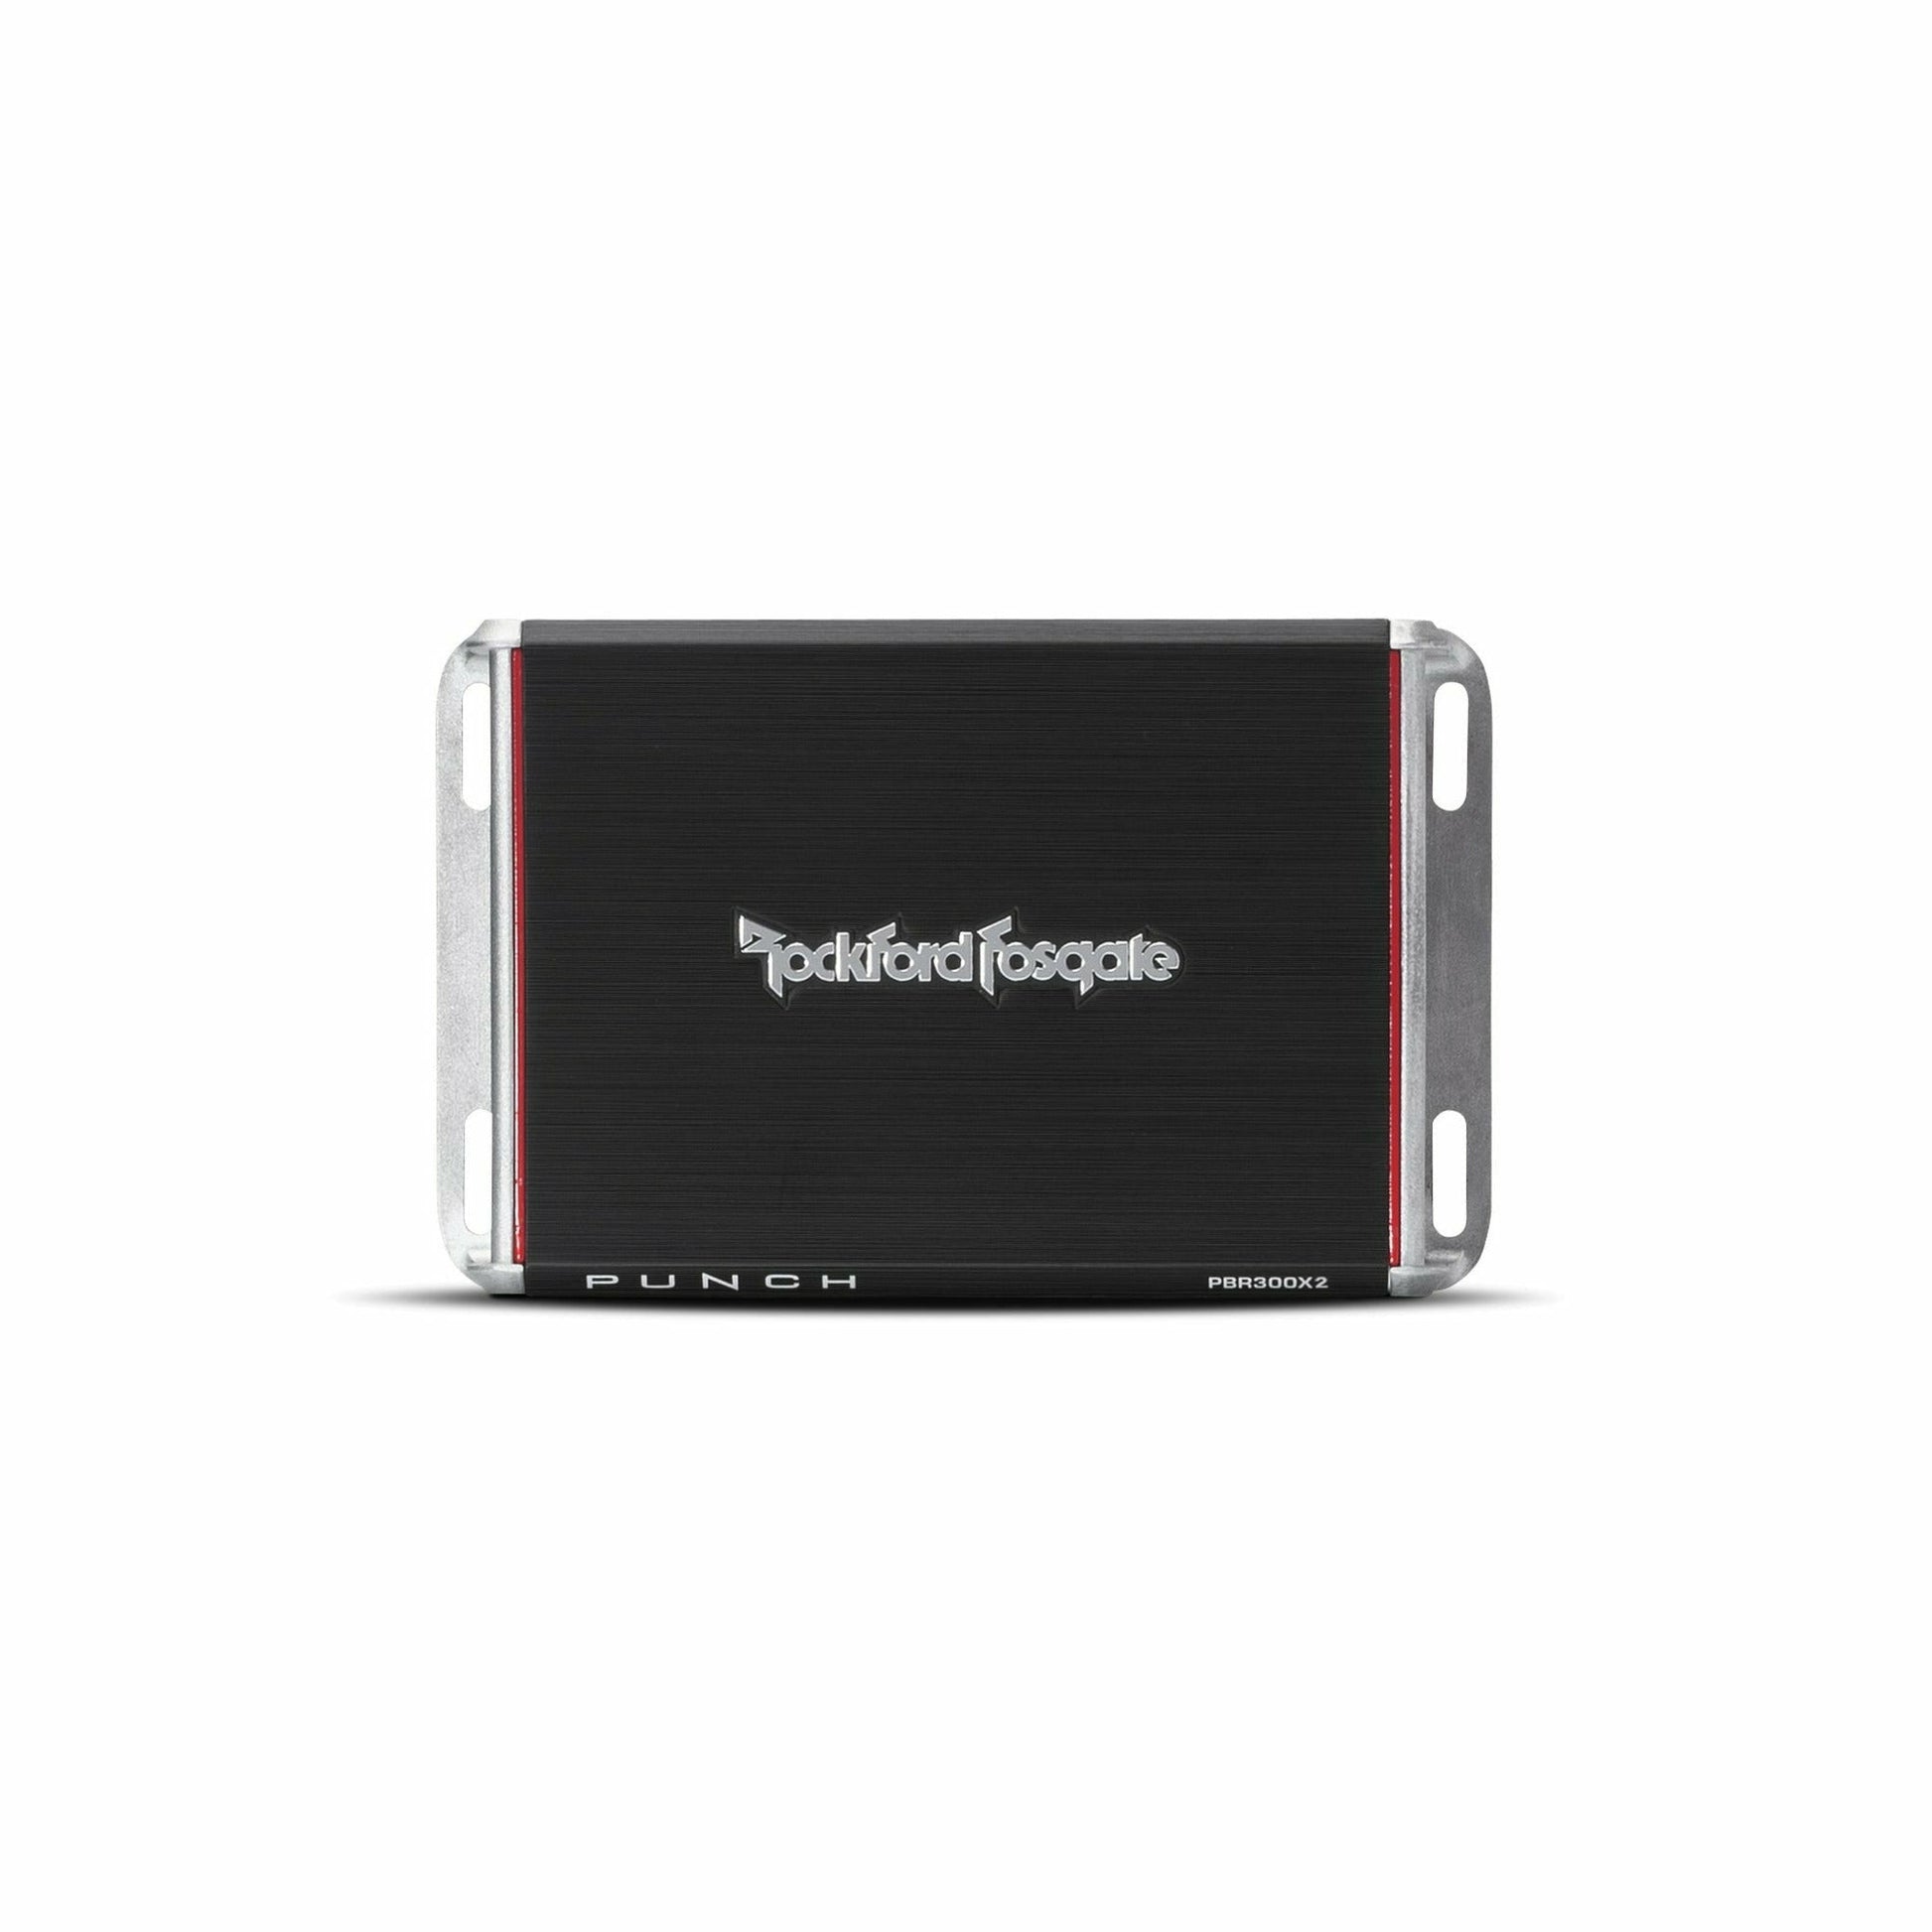 Rockford Fosgate Punch 300 Watt 2-Channel Amplifier